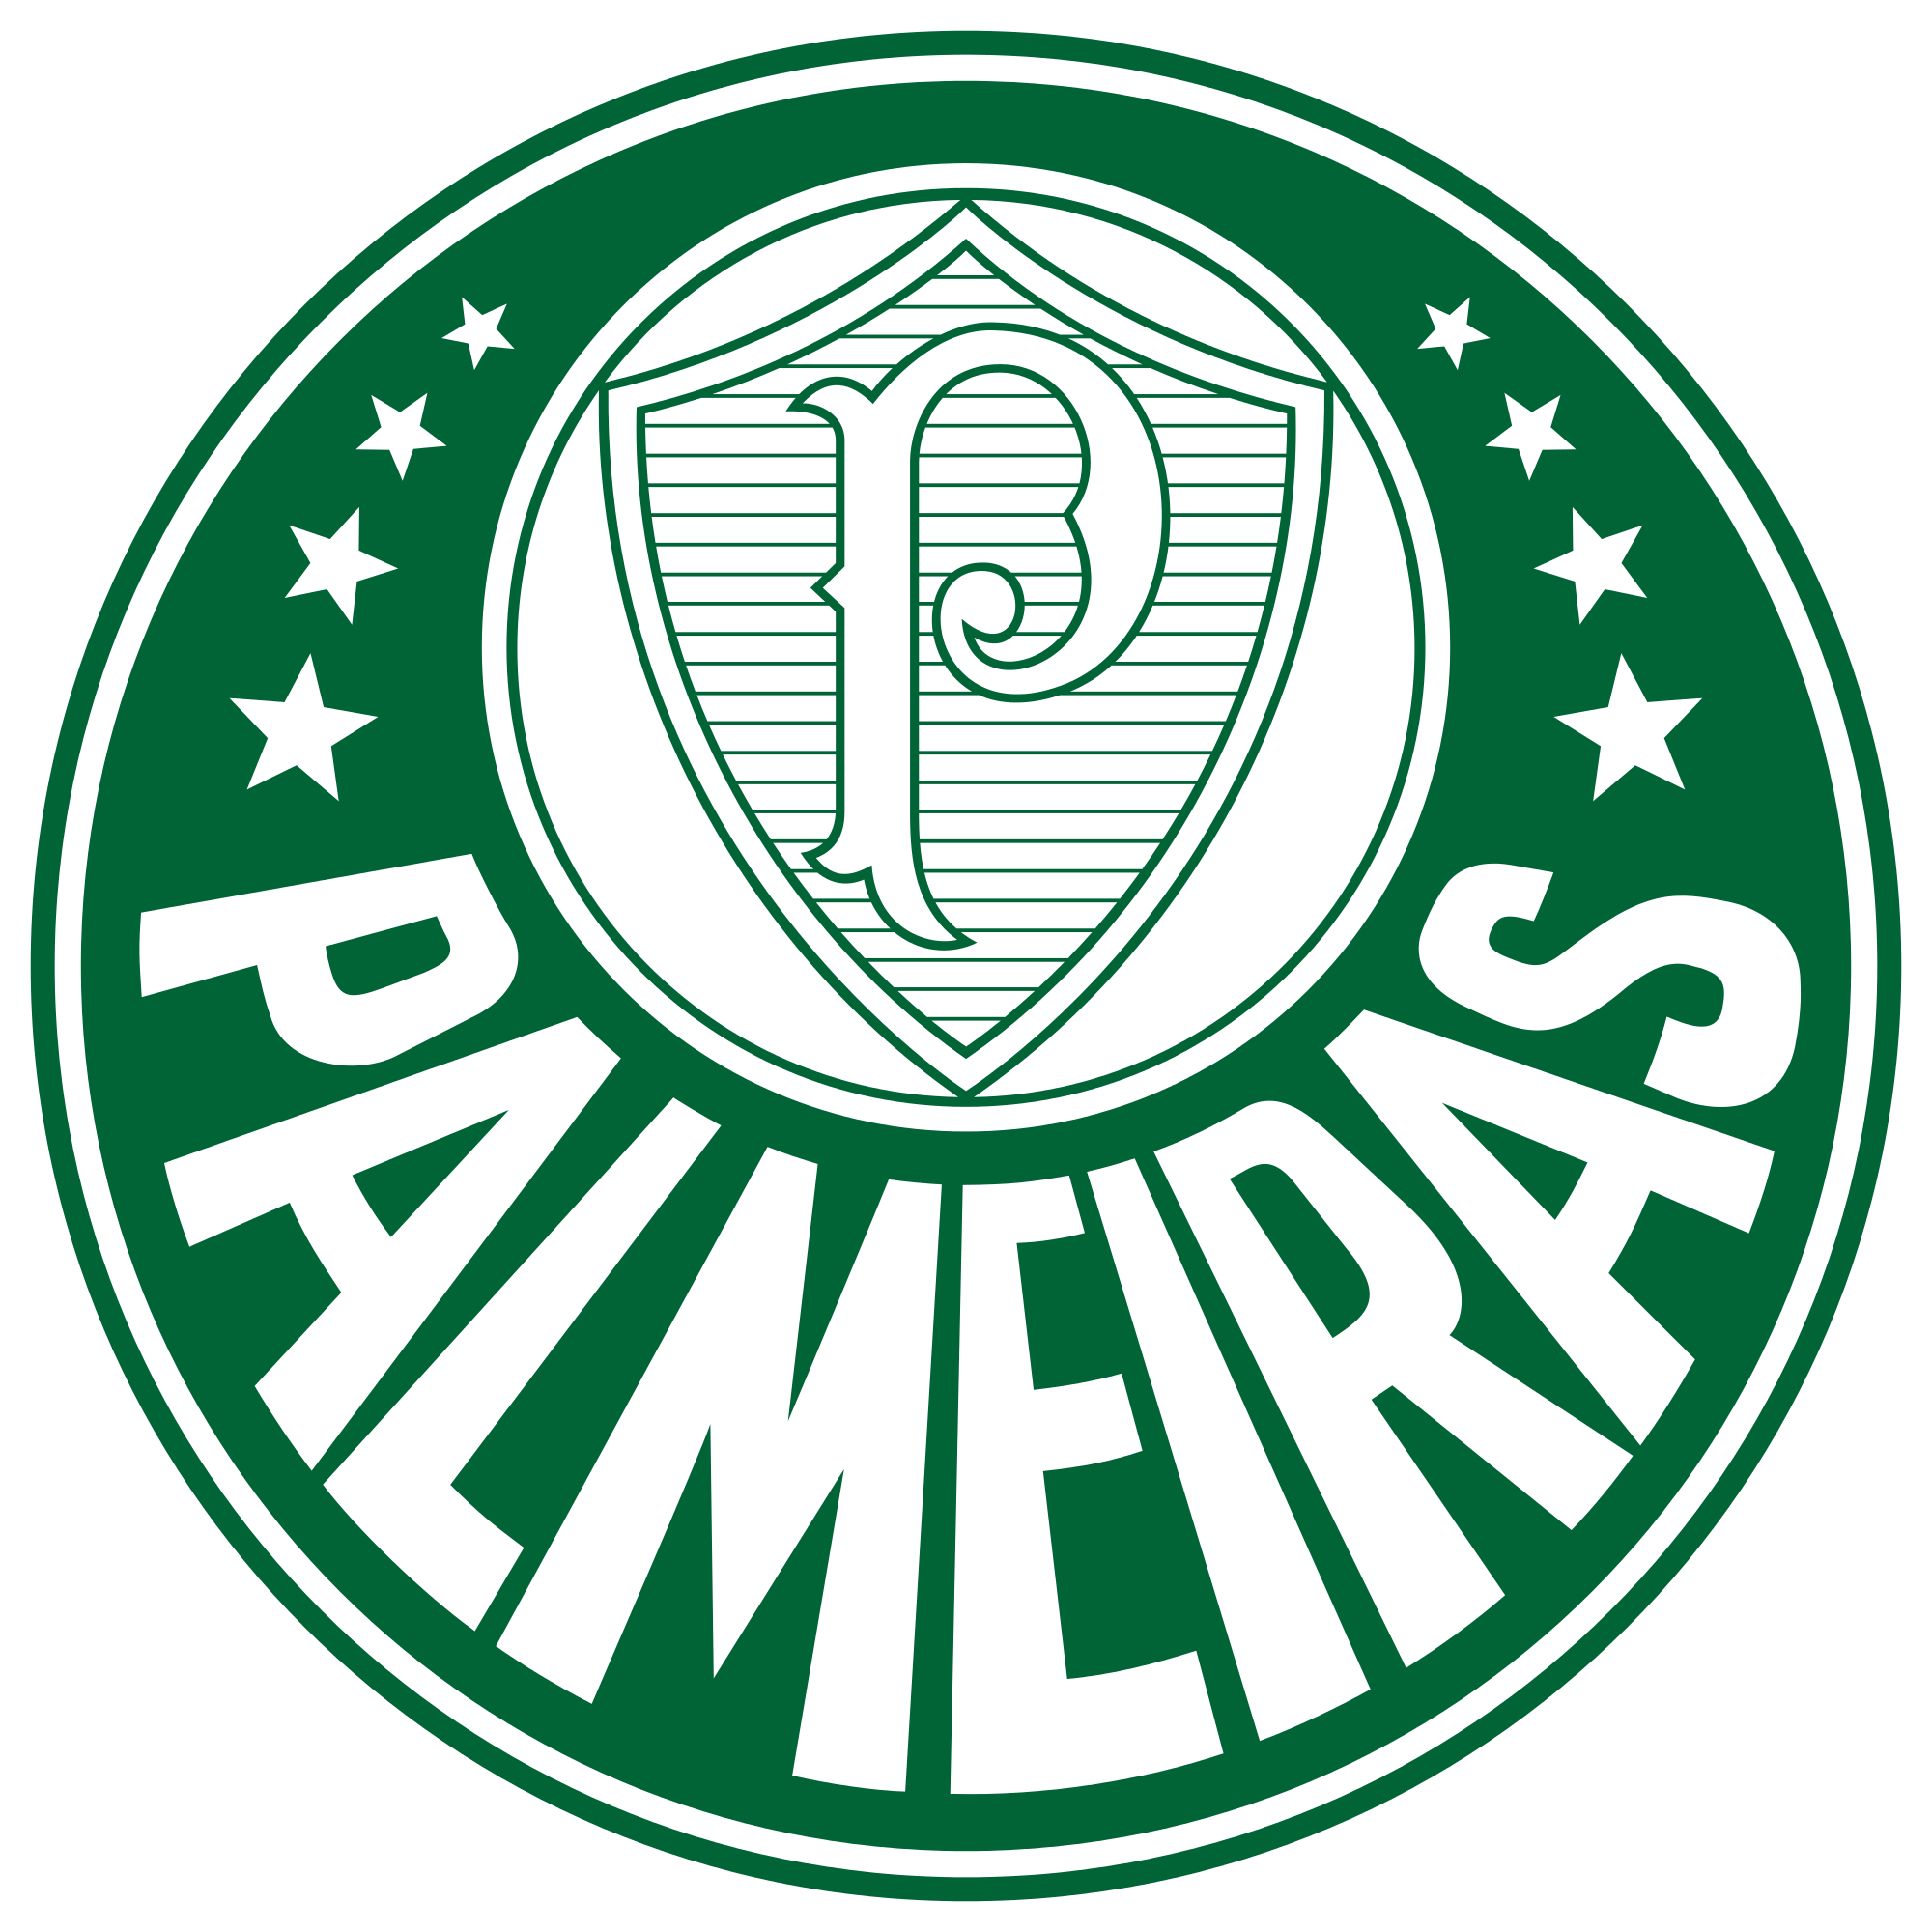  Palmeiras Campeão do Mundo 1951 (Portuguese Edition